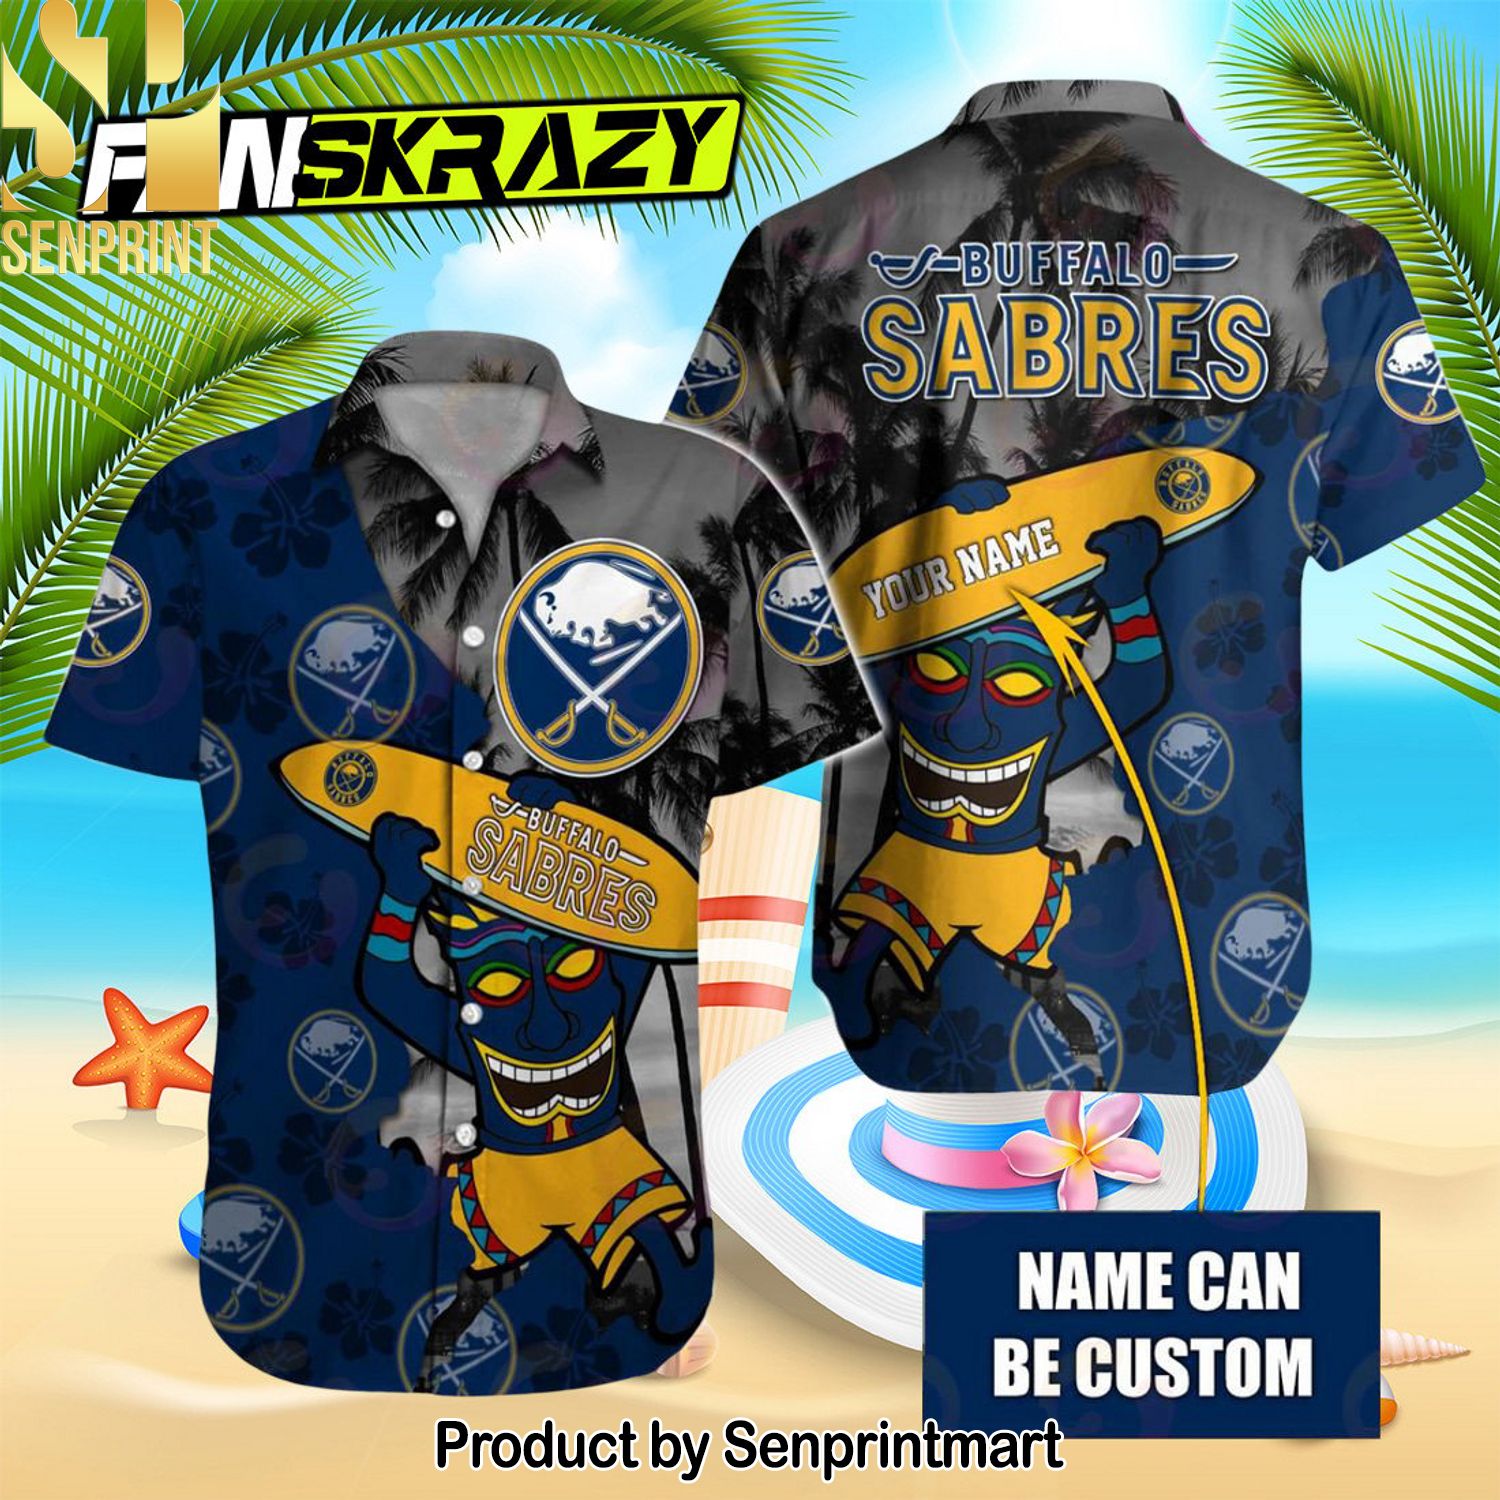 NHL Buffalo Sabres Native New Style Hawaiian Shirt and Shorts